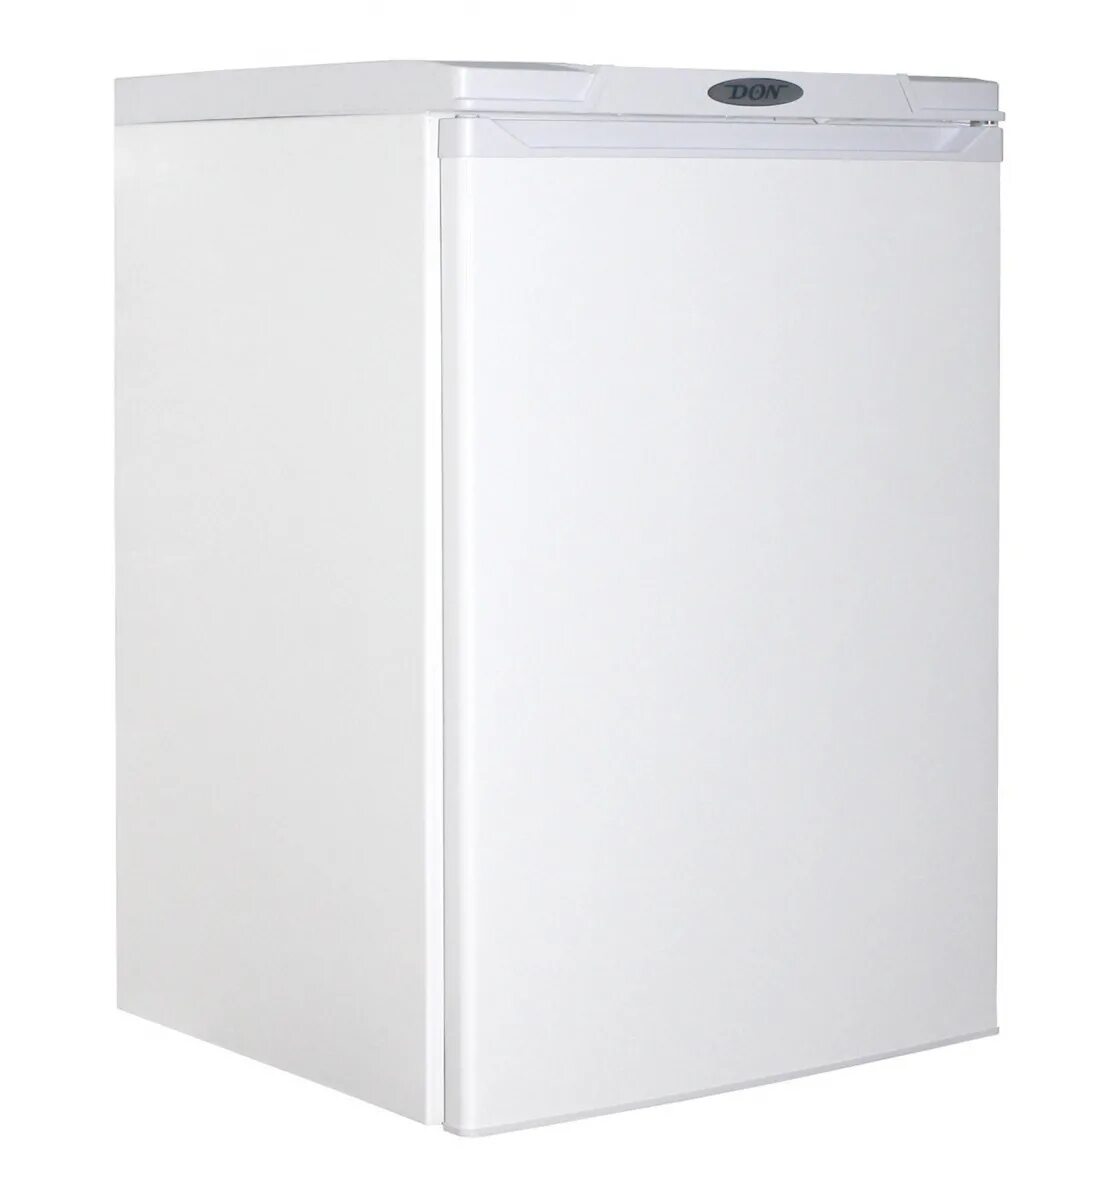 Холодильник 85 см высота. Холодильник don r-405 g. Холодильник don r-405 b. Холодильник Дон r407. Холодильник don r-405 001 g.